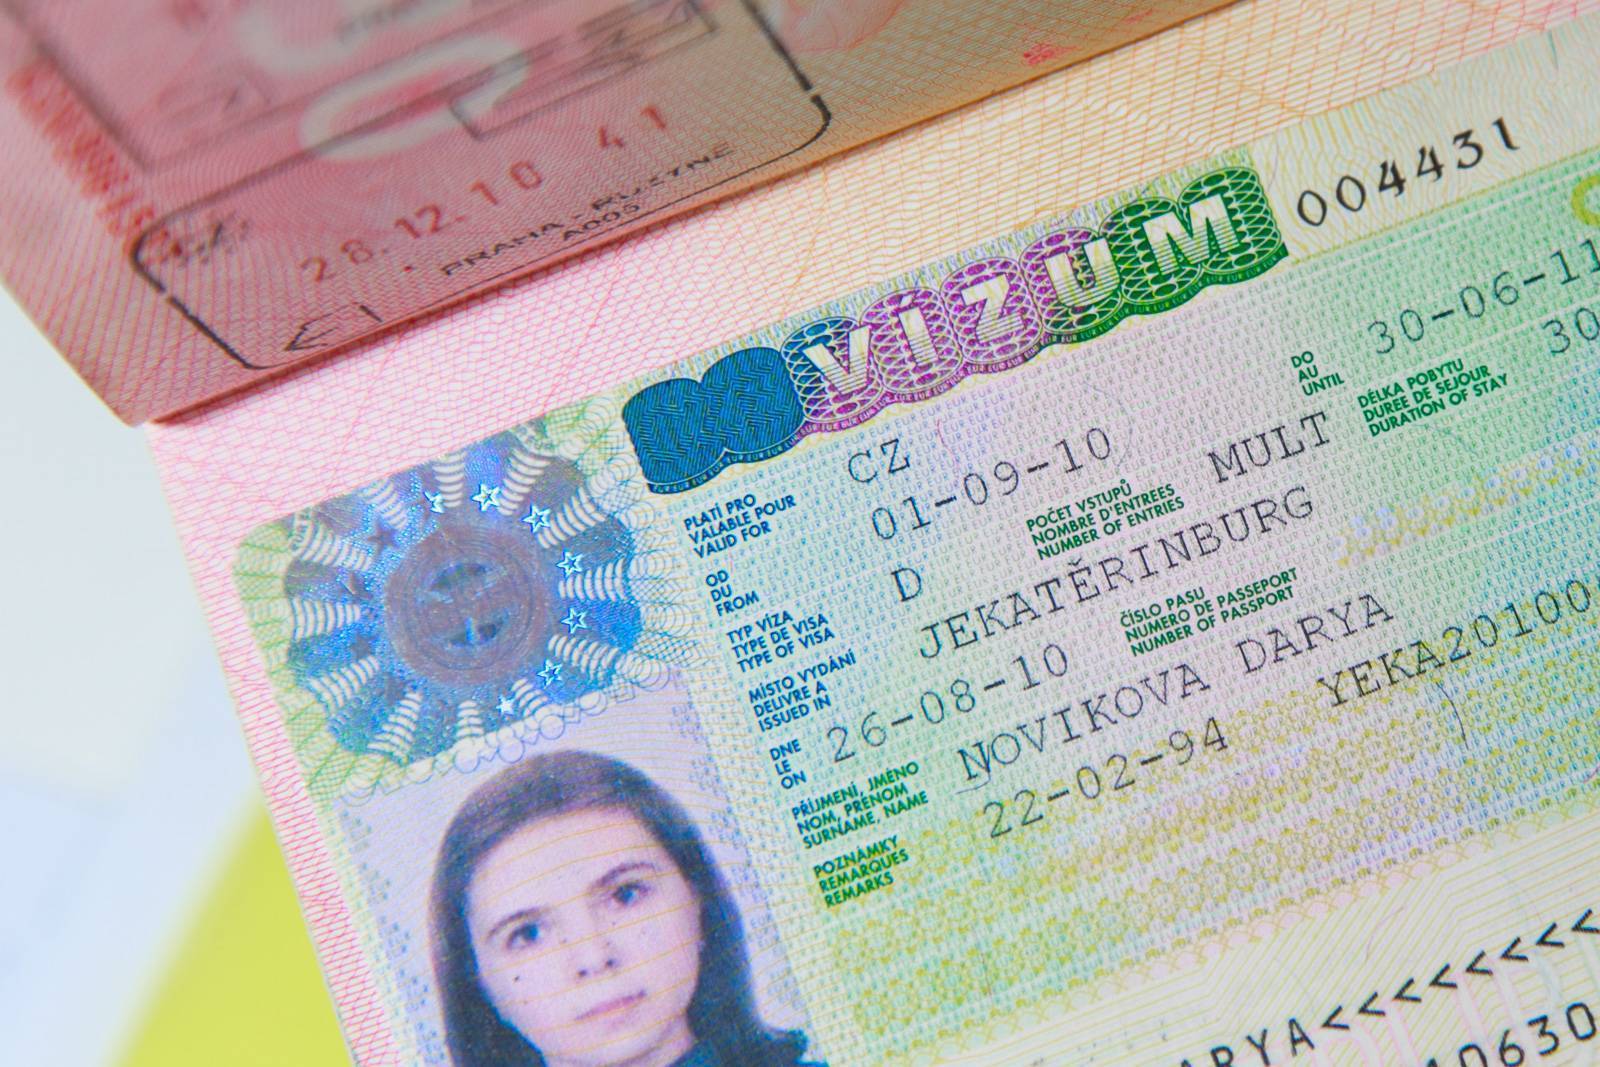 Студенческая виза в чехию для россиян: как получить и сколько стоит долгосрочная учебная виза в чехию? | espanglish